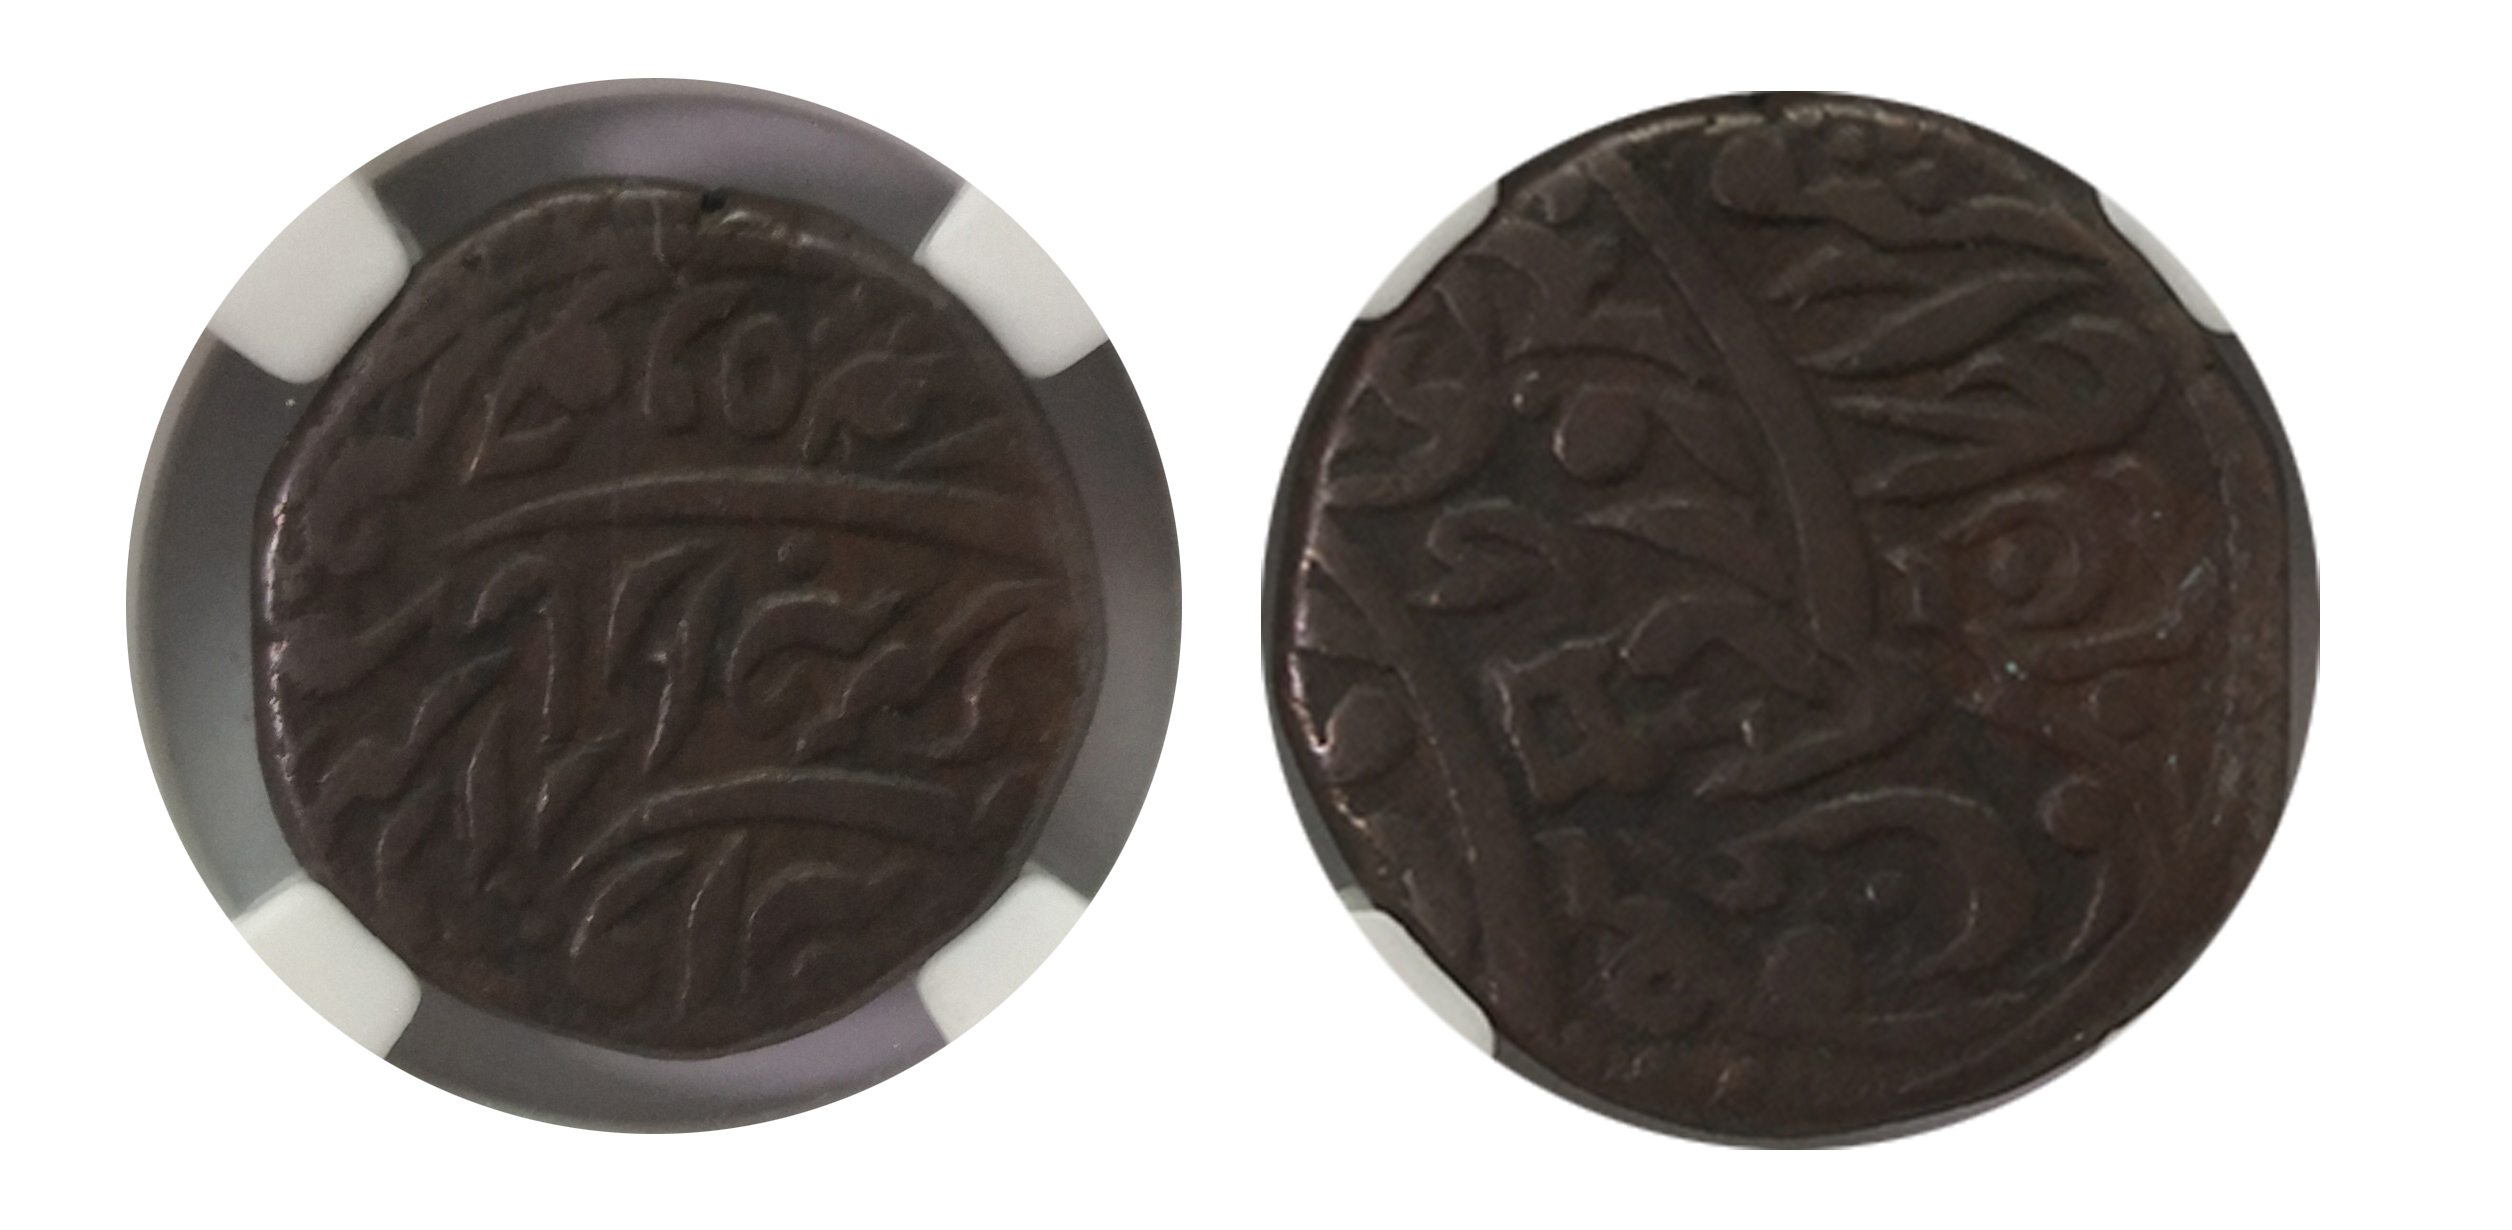 贵霜王朝铜币